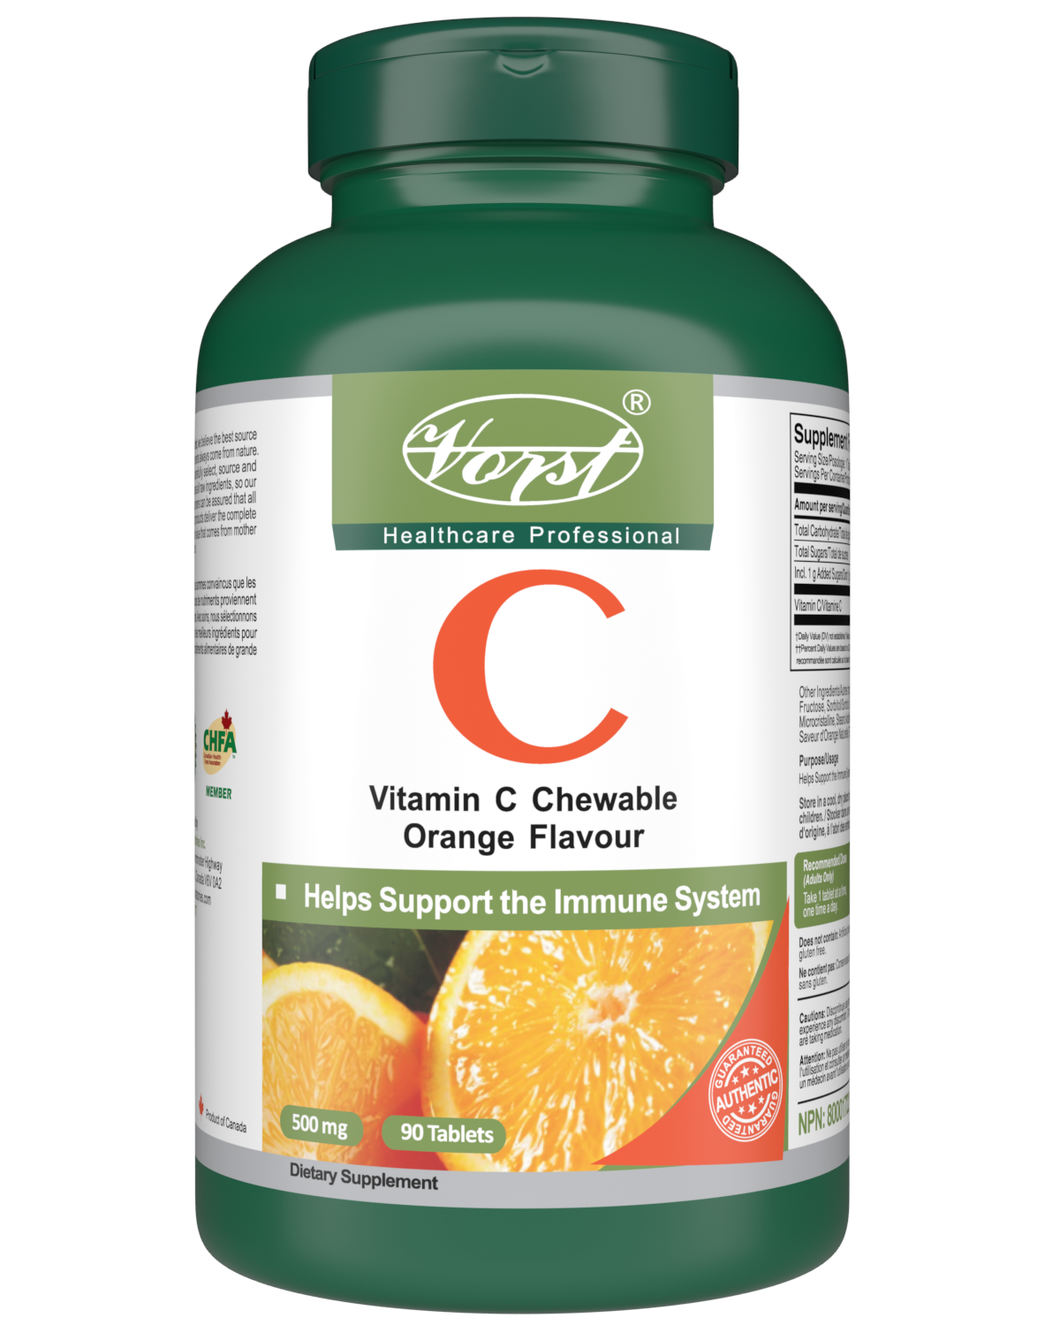 Vitamin C Chewable Orange Flavour 90 Tablets